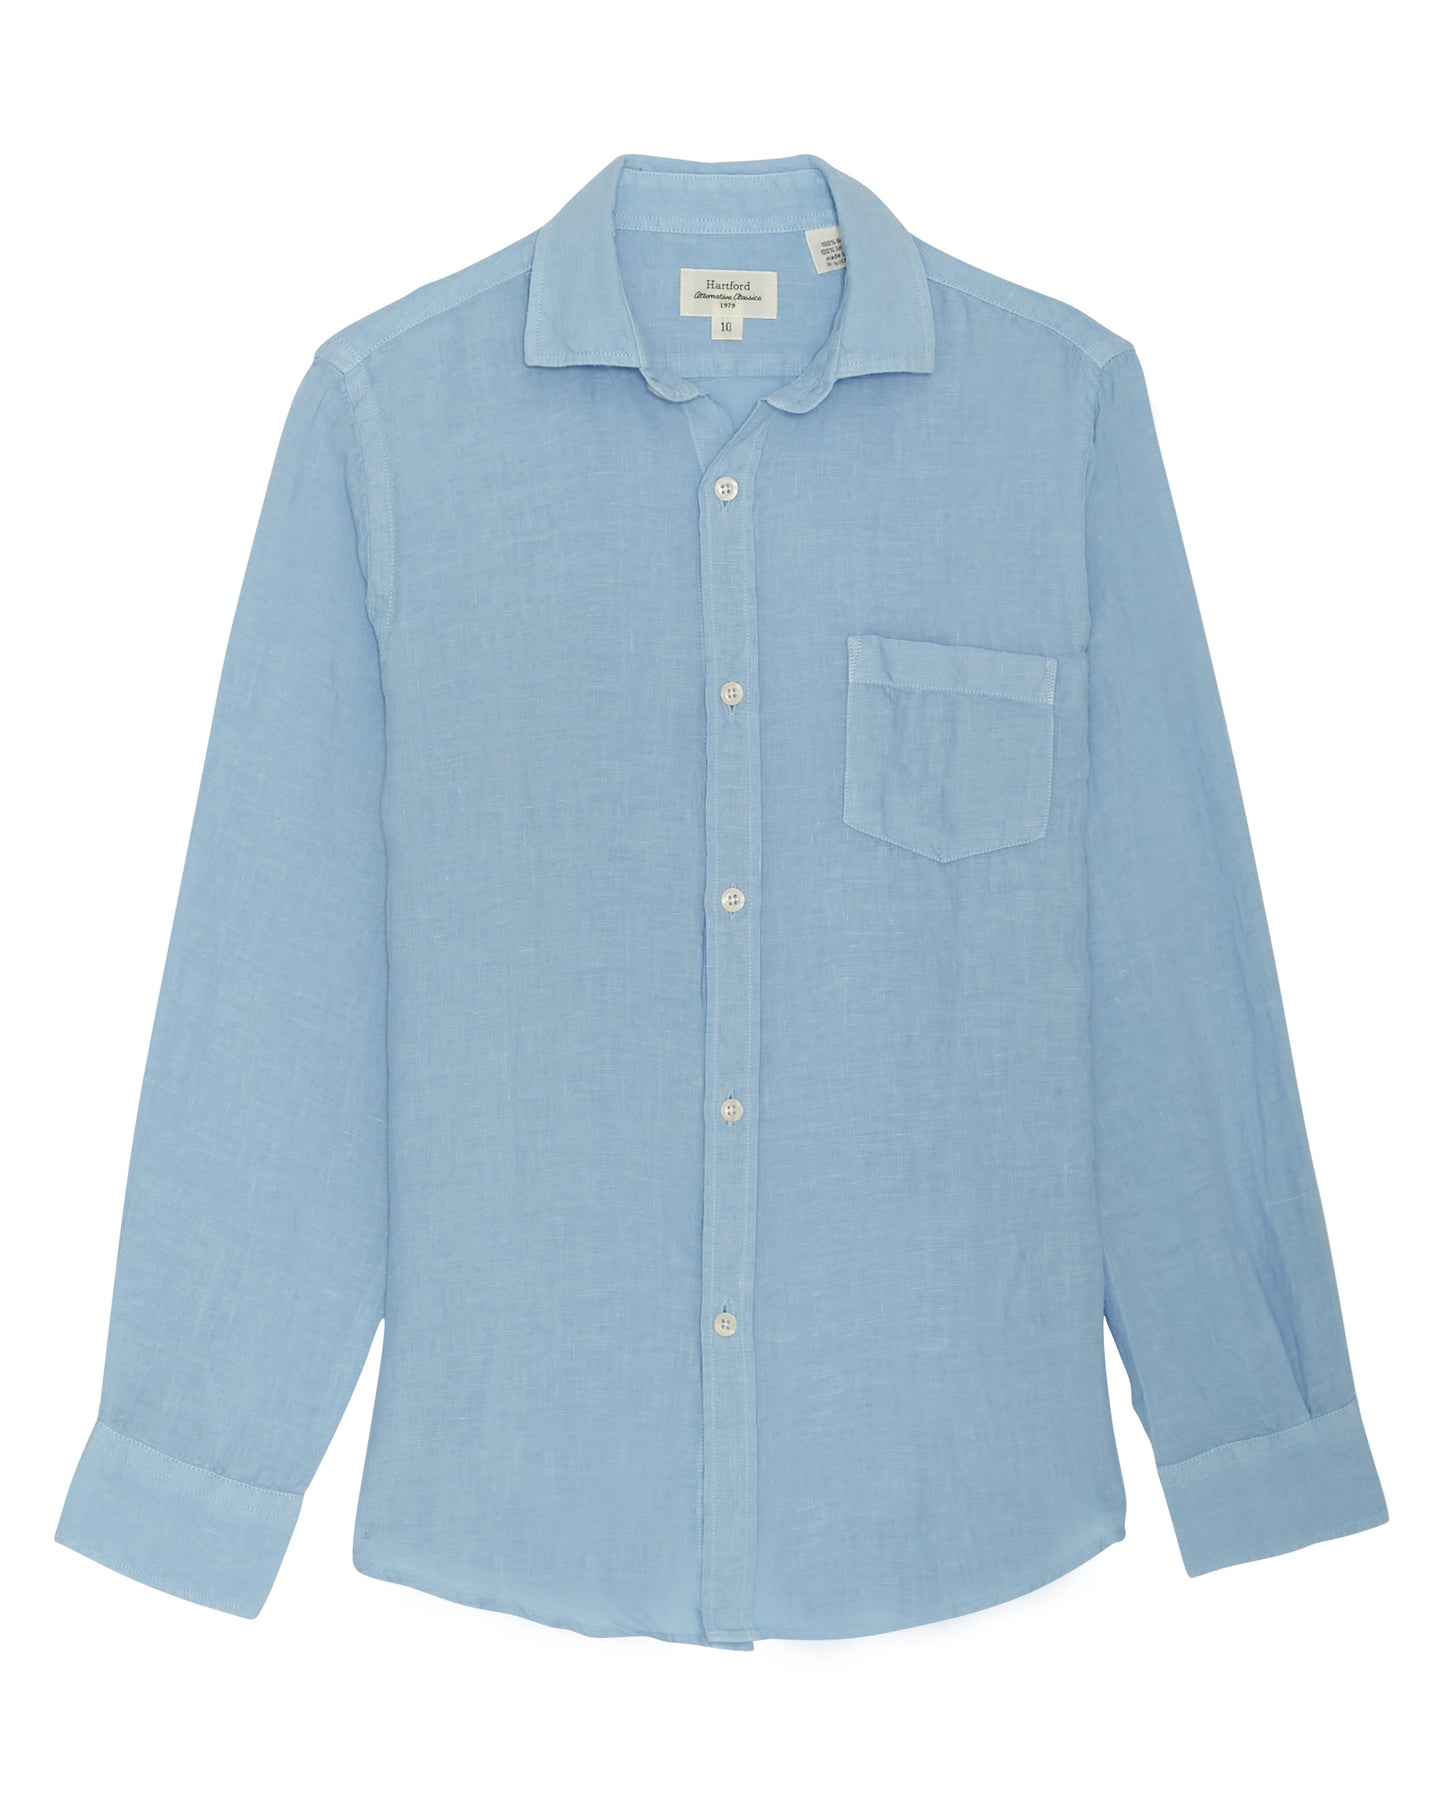 Paul Boys' Light Blue Linen Shirt